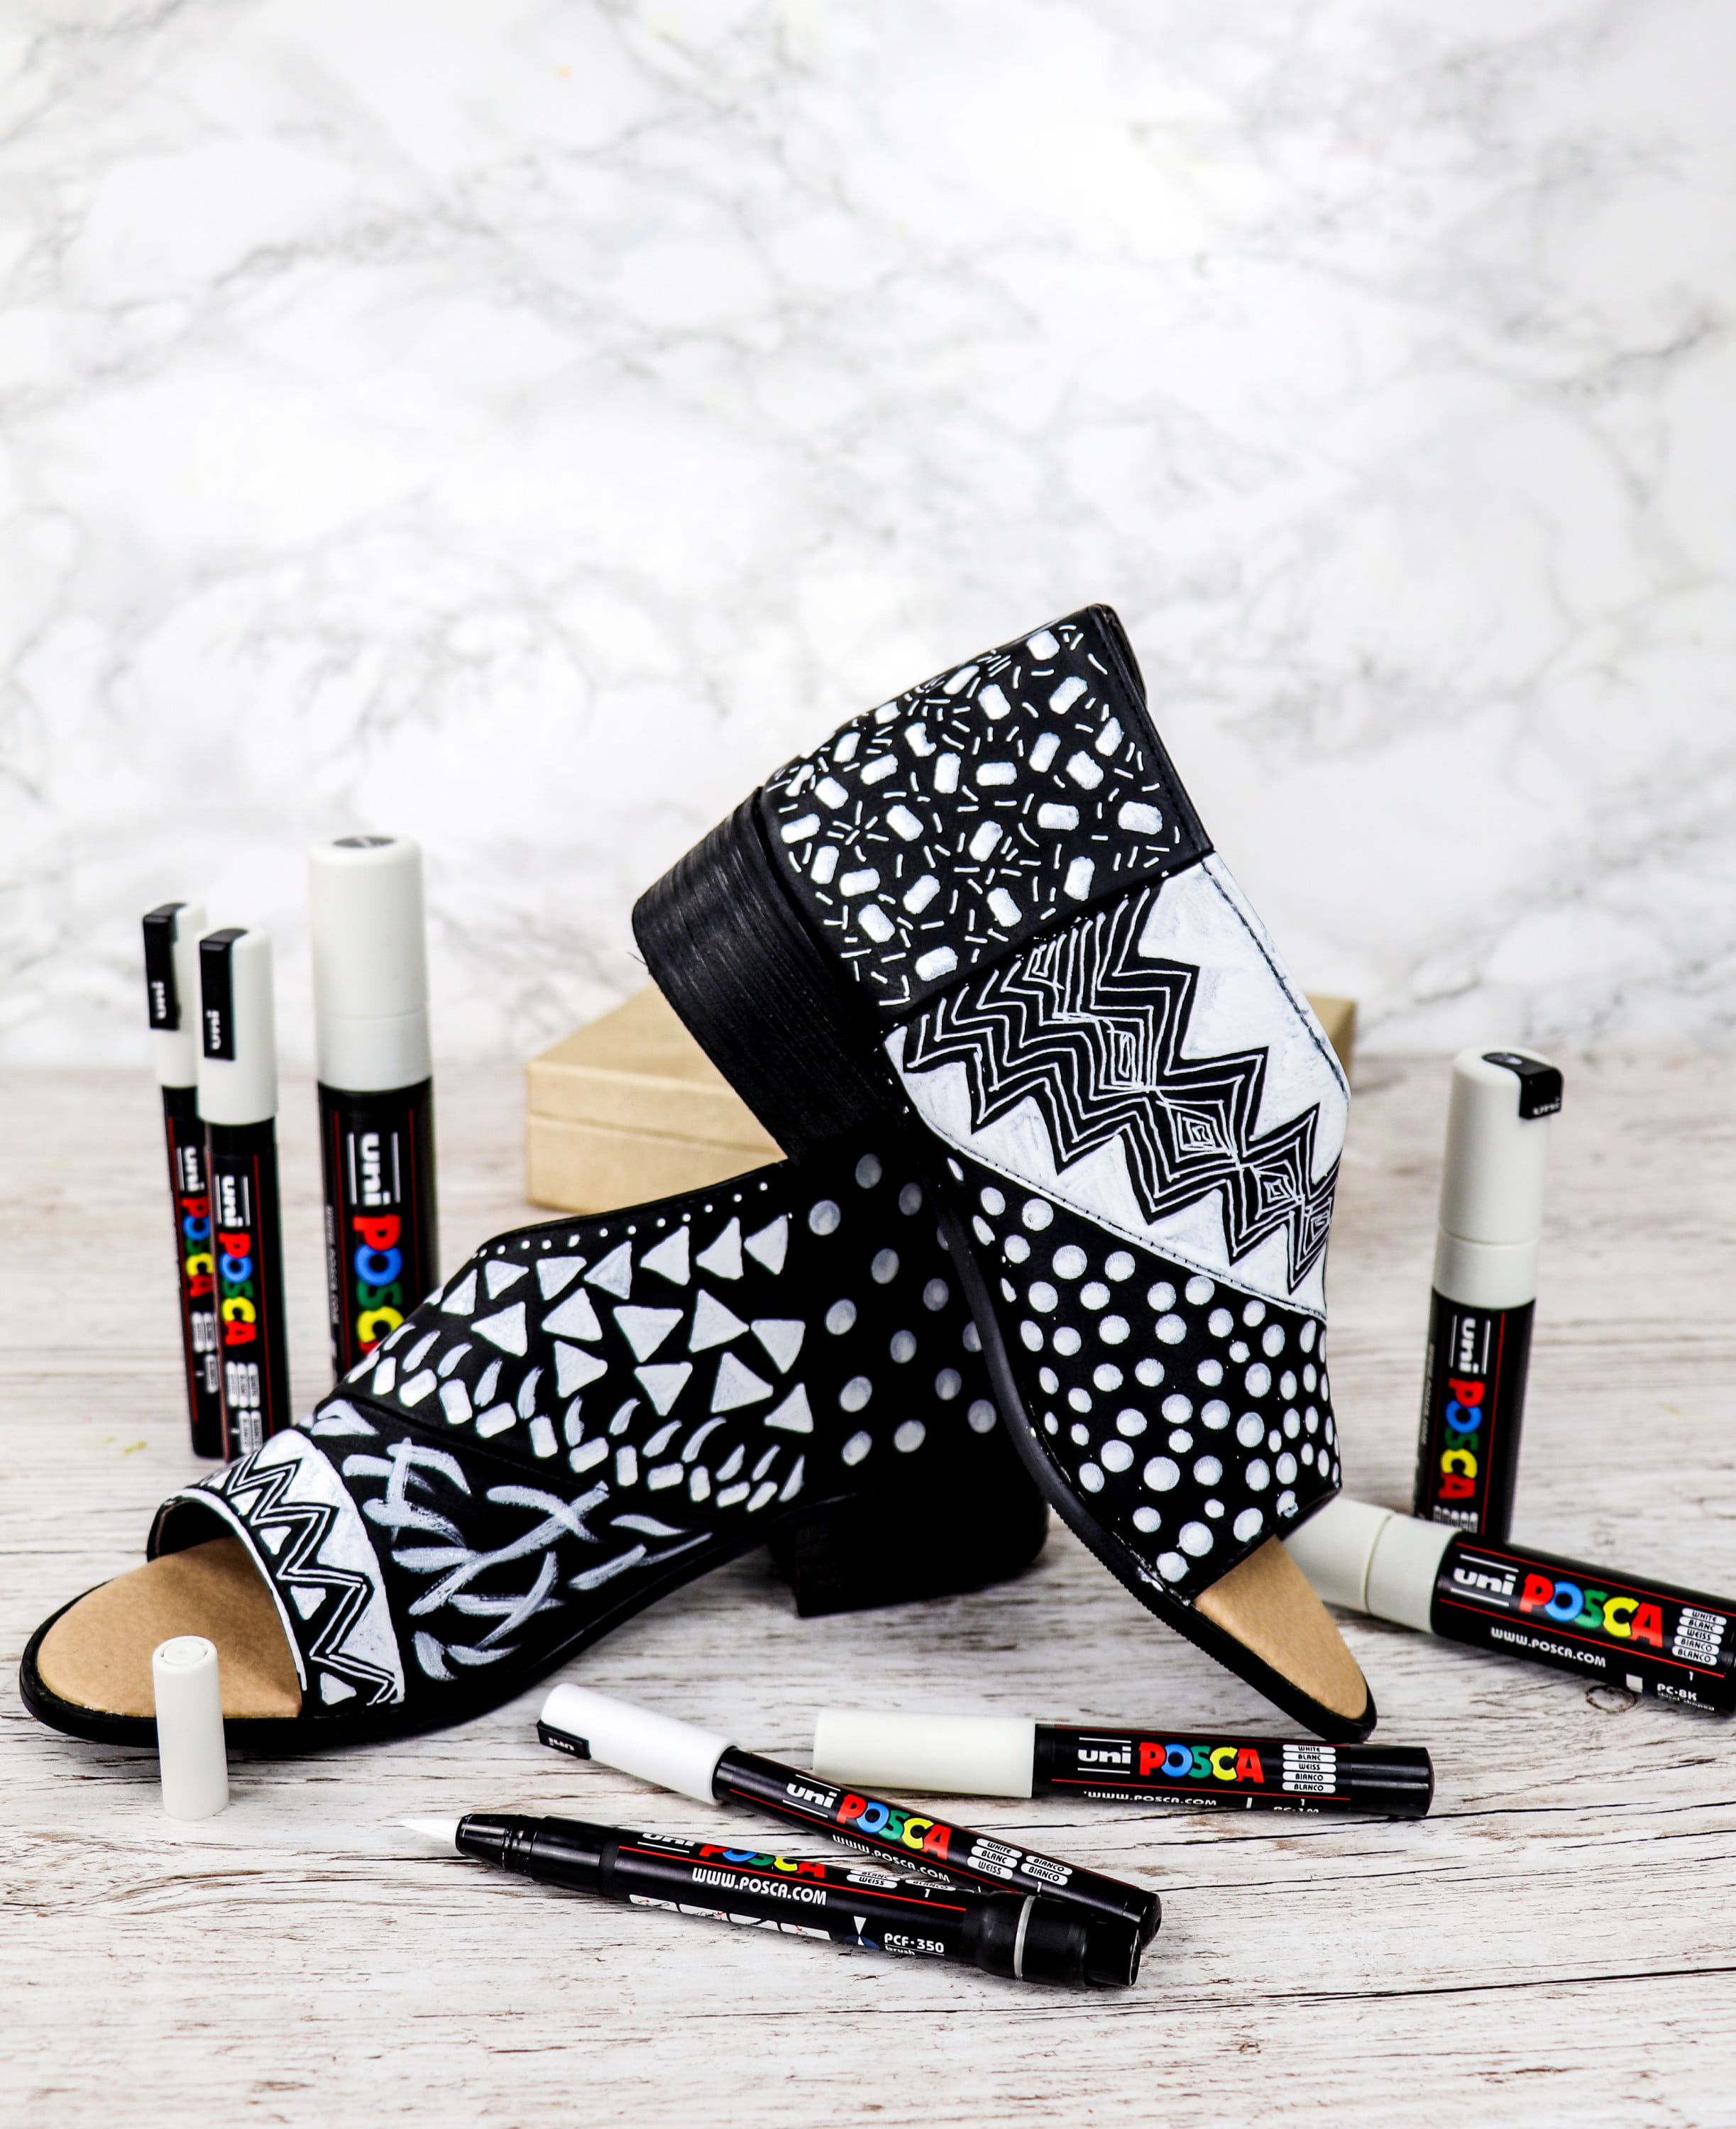 Posca Paint Pen - Black and White set – ART QUILT SUPPLIES - 2 Sew Textiles